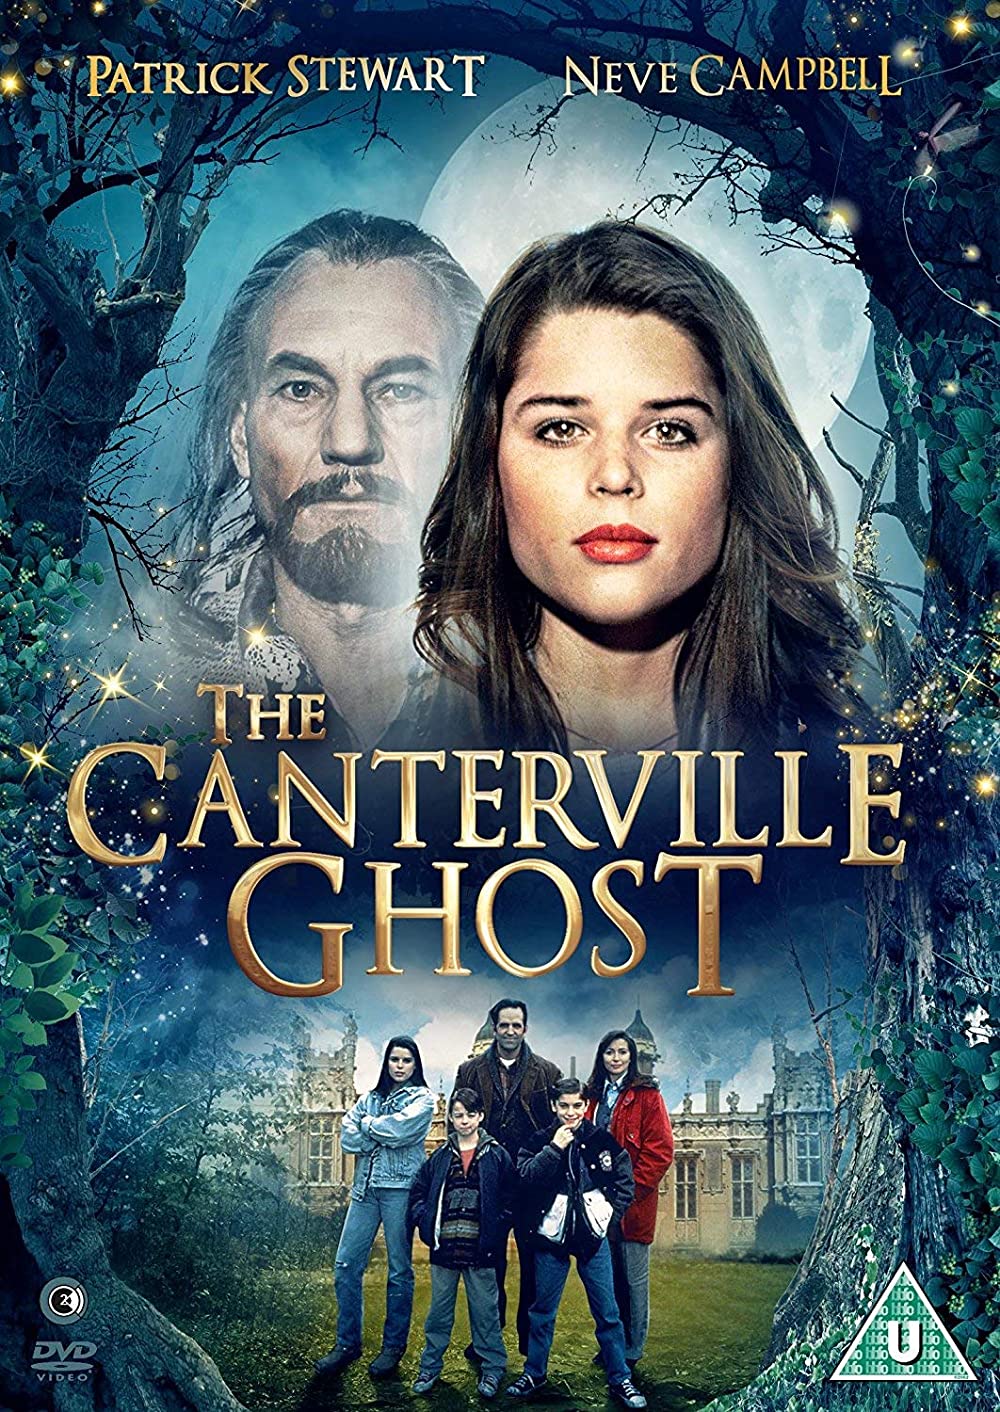 Filmbeschreibung zu The Canterville Ghost